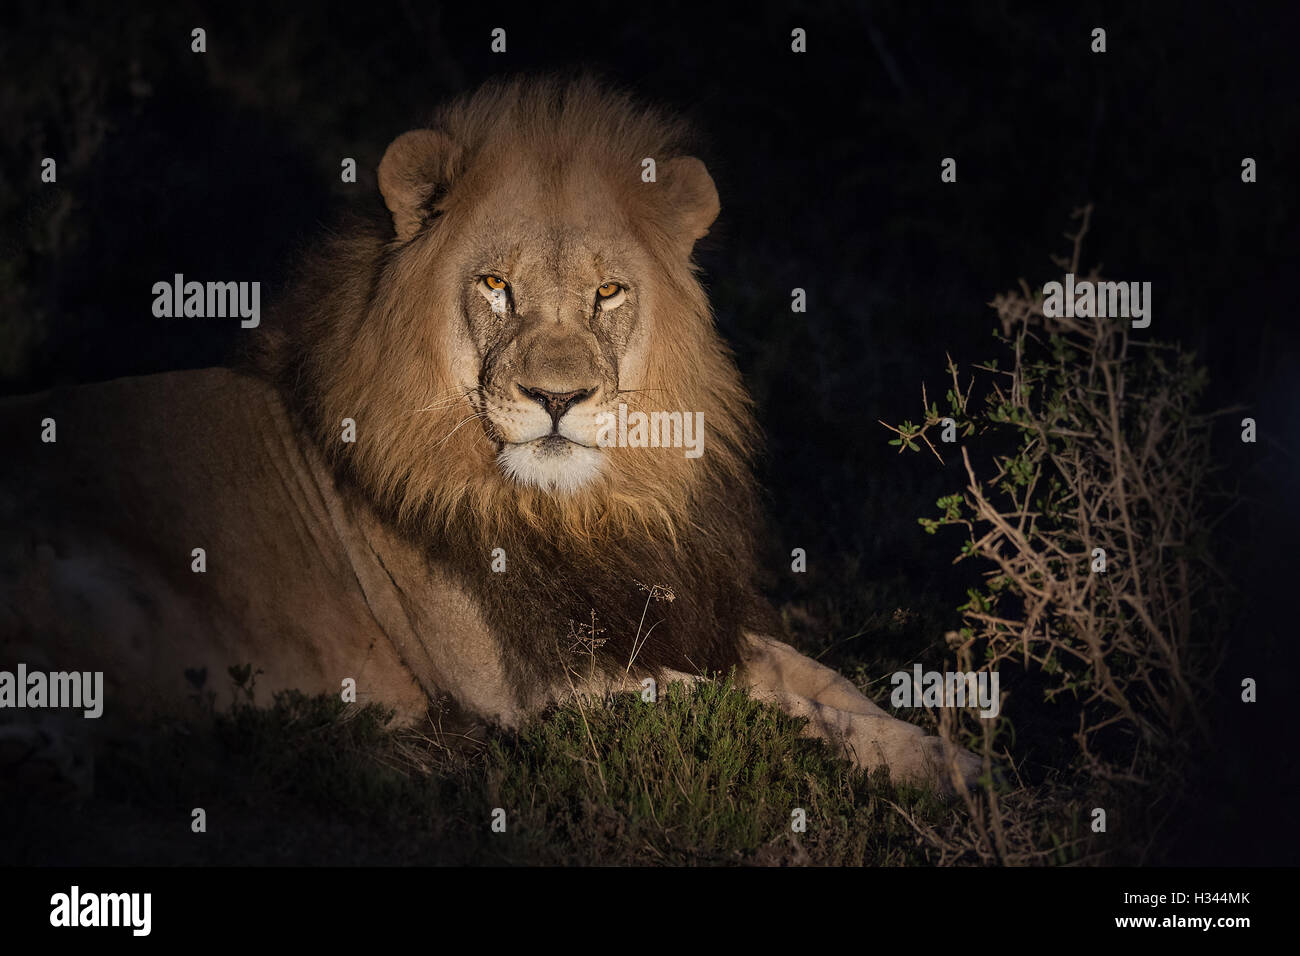 Große männlichen Löwen ruht auf dem Rasen, beleuchtet mit einem Scheinwerfer, vor einem schwarzen Hintergrund des Nachthimmels. Stockfoto